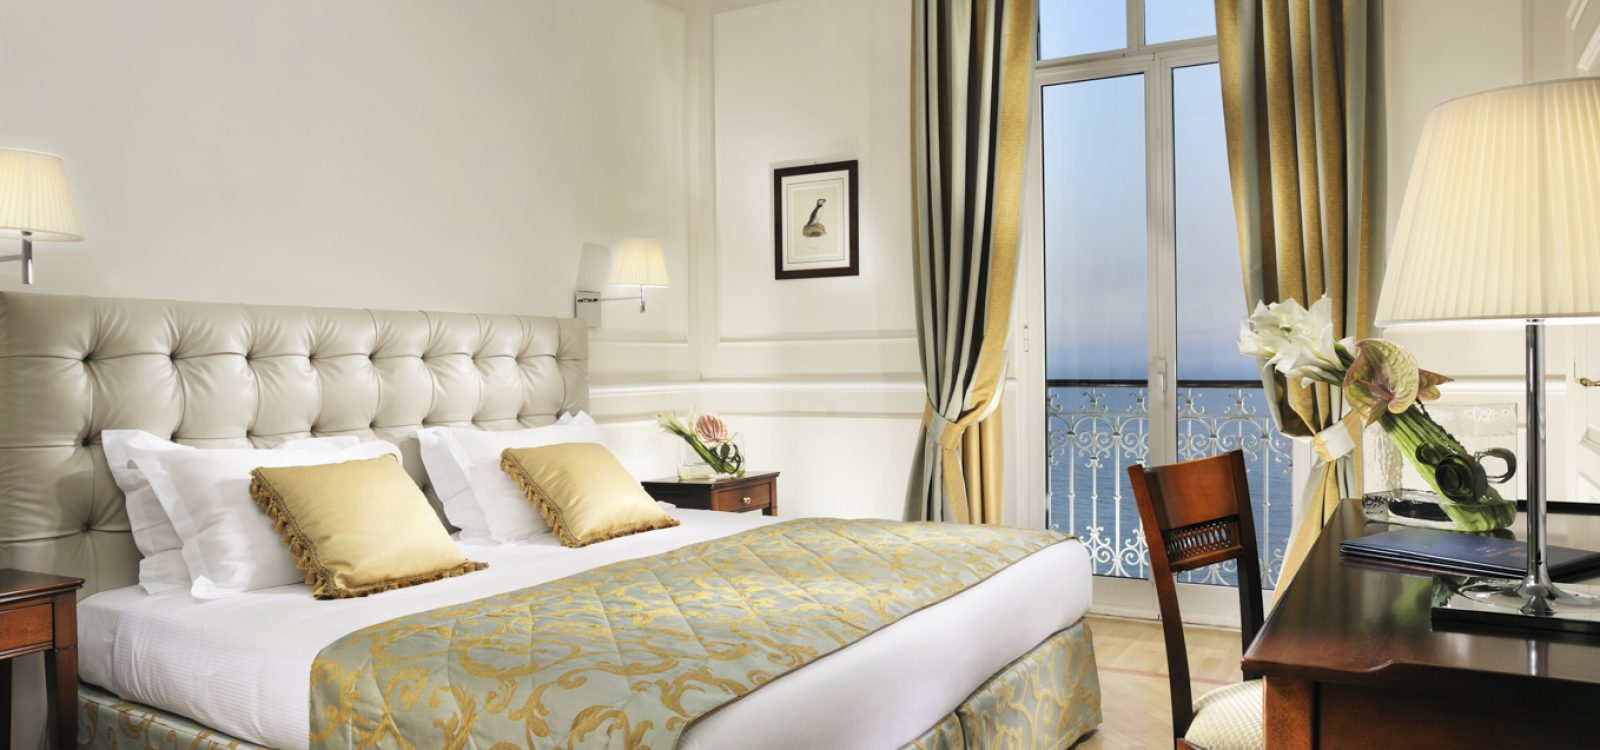 Royal Hotel Sanremo-14 Superior Sea View room-WEB